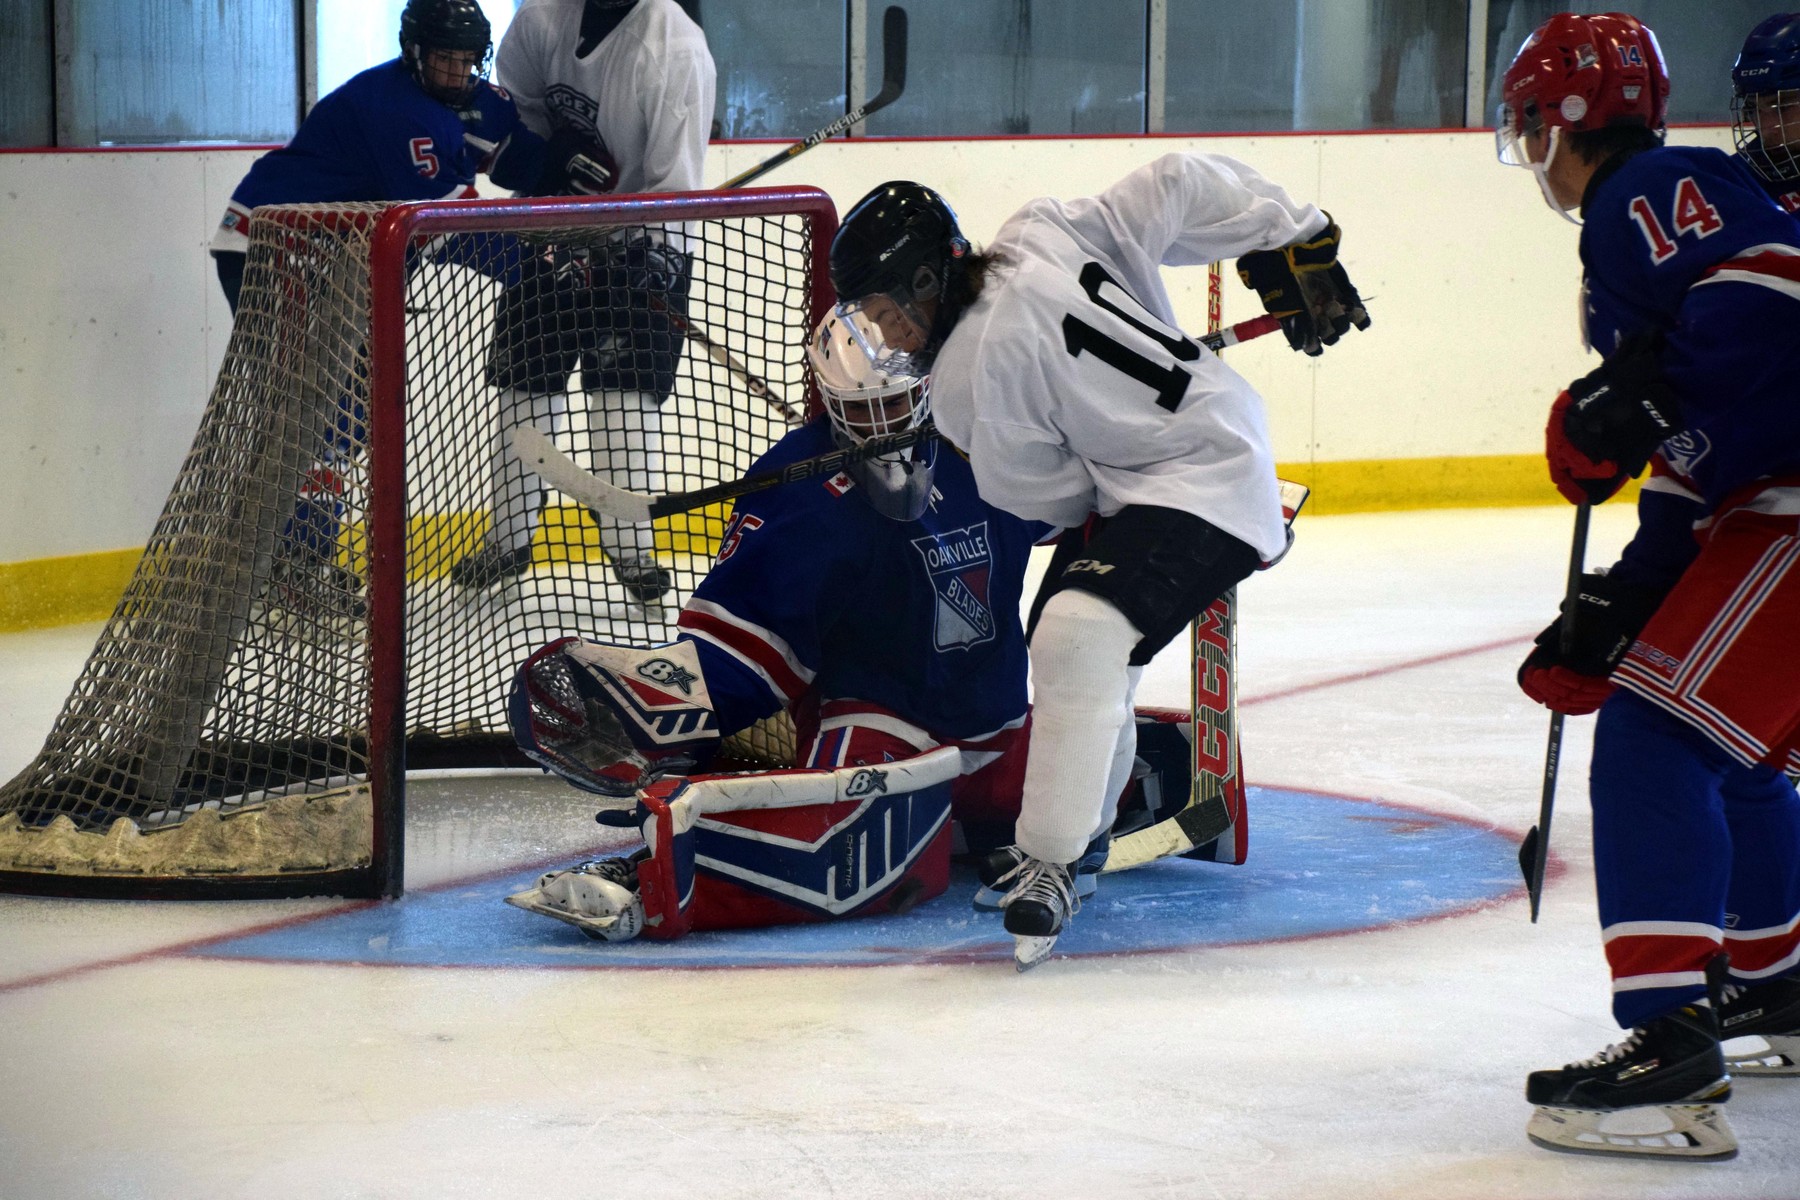 Goalie and opposing player in the net | Scott Ellis - The Hockey House